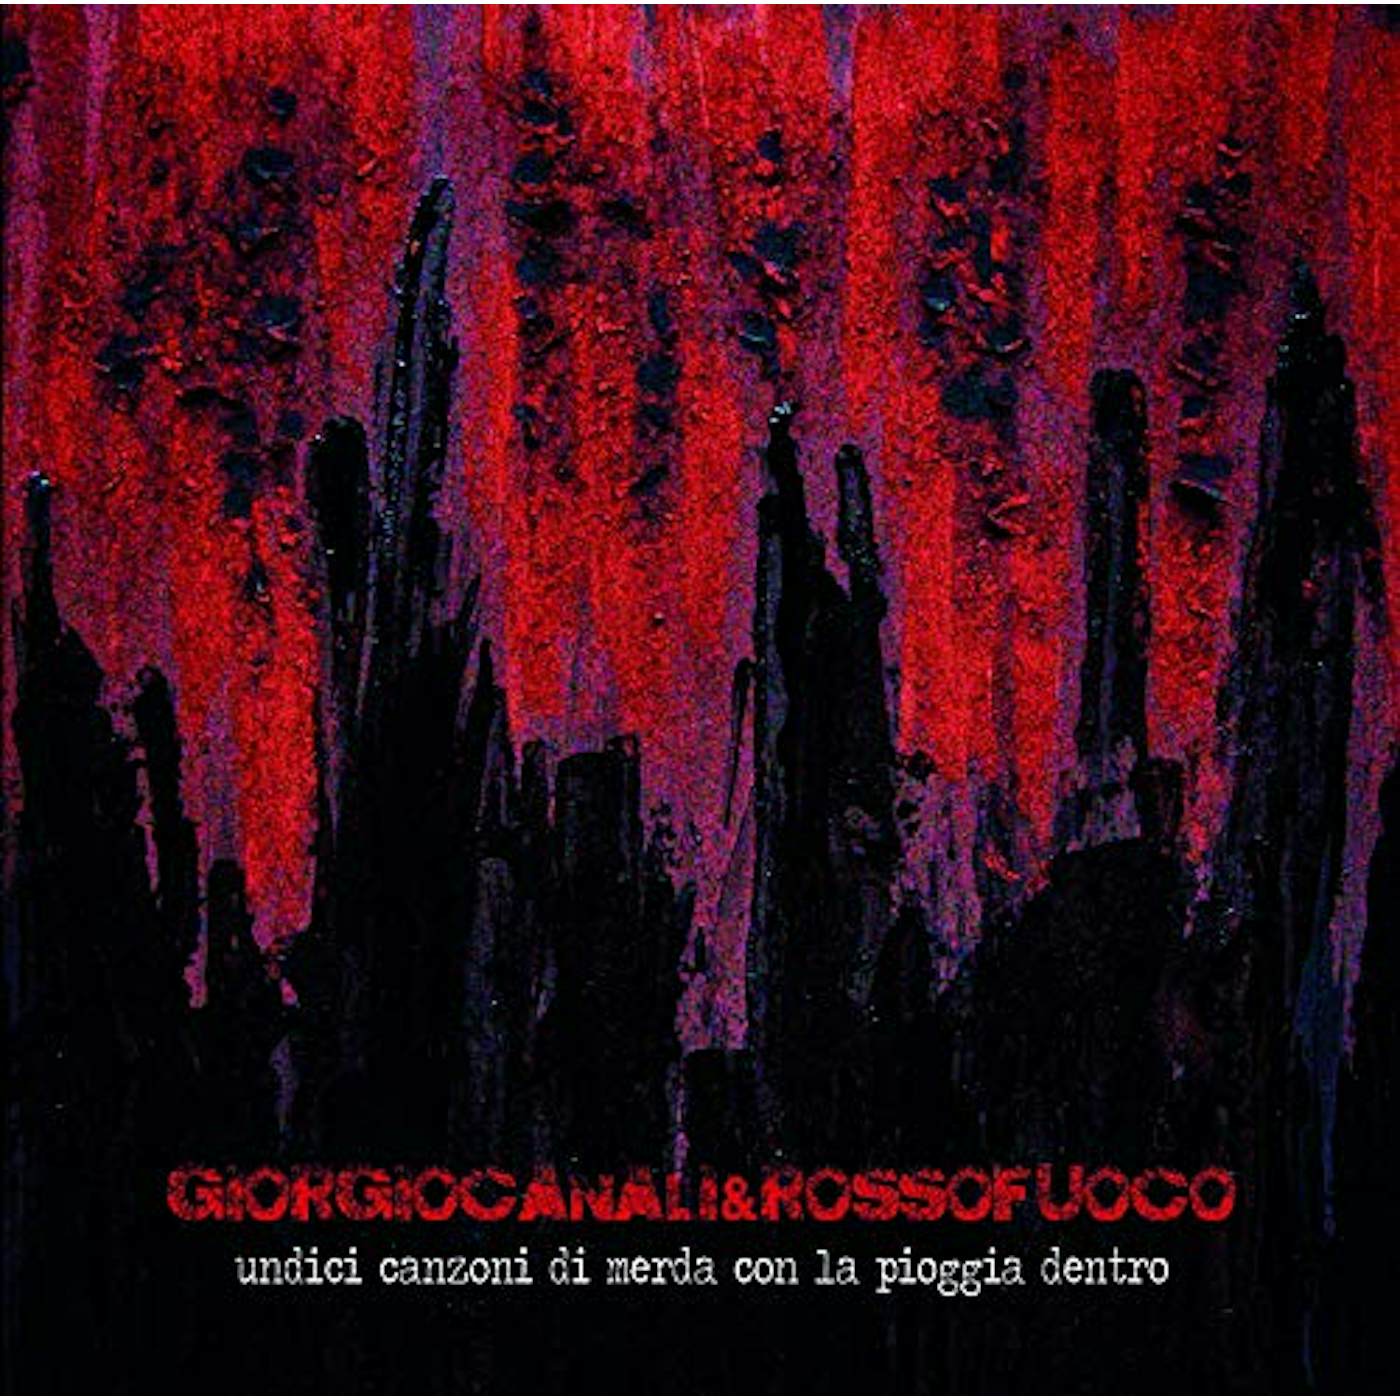 Giorgio Canali & Rossofuoco Undici Canzoni Di Merda Con La Pioggia Dentro Vinyl Record